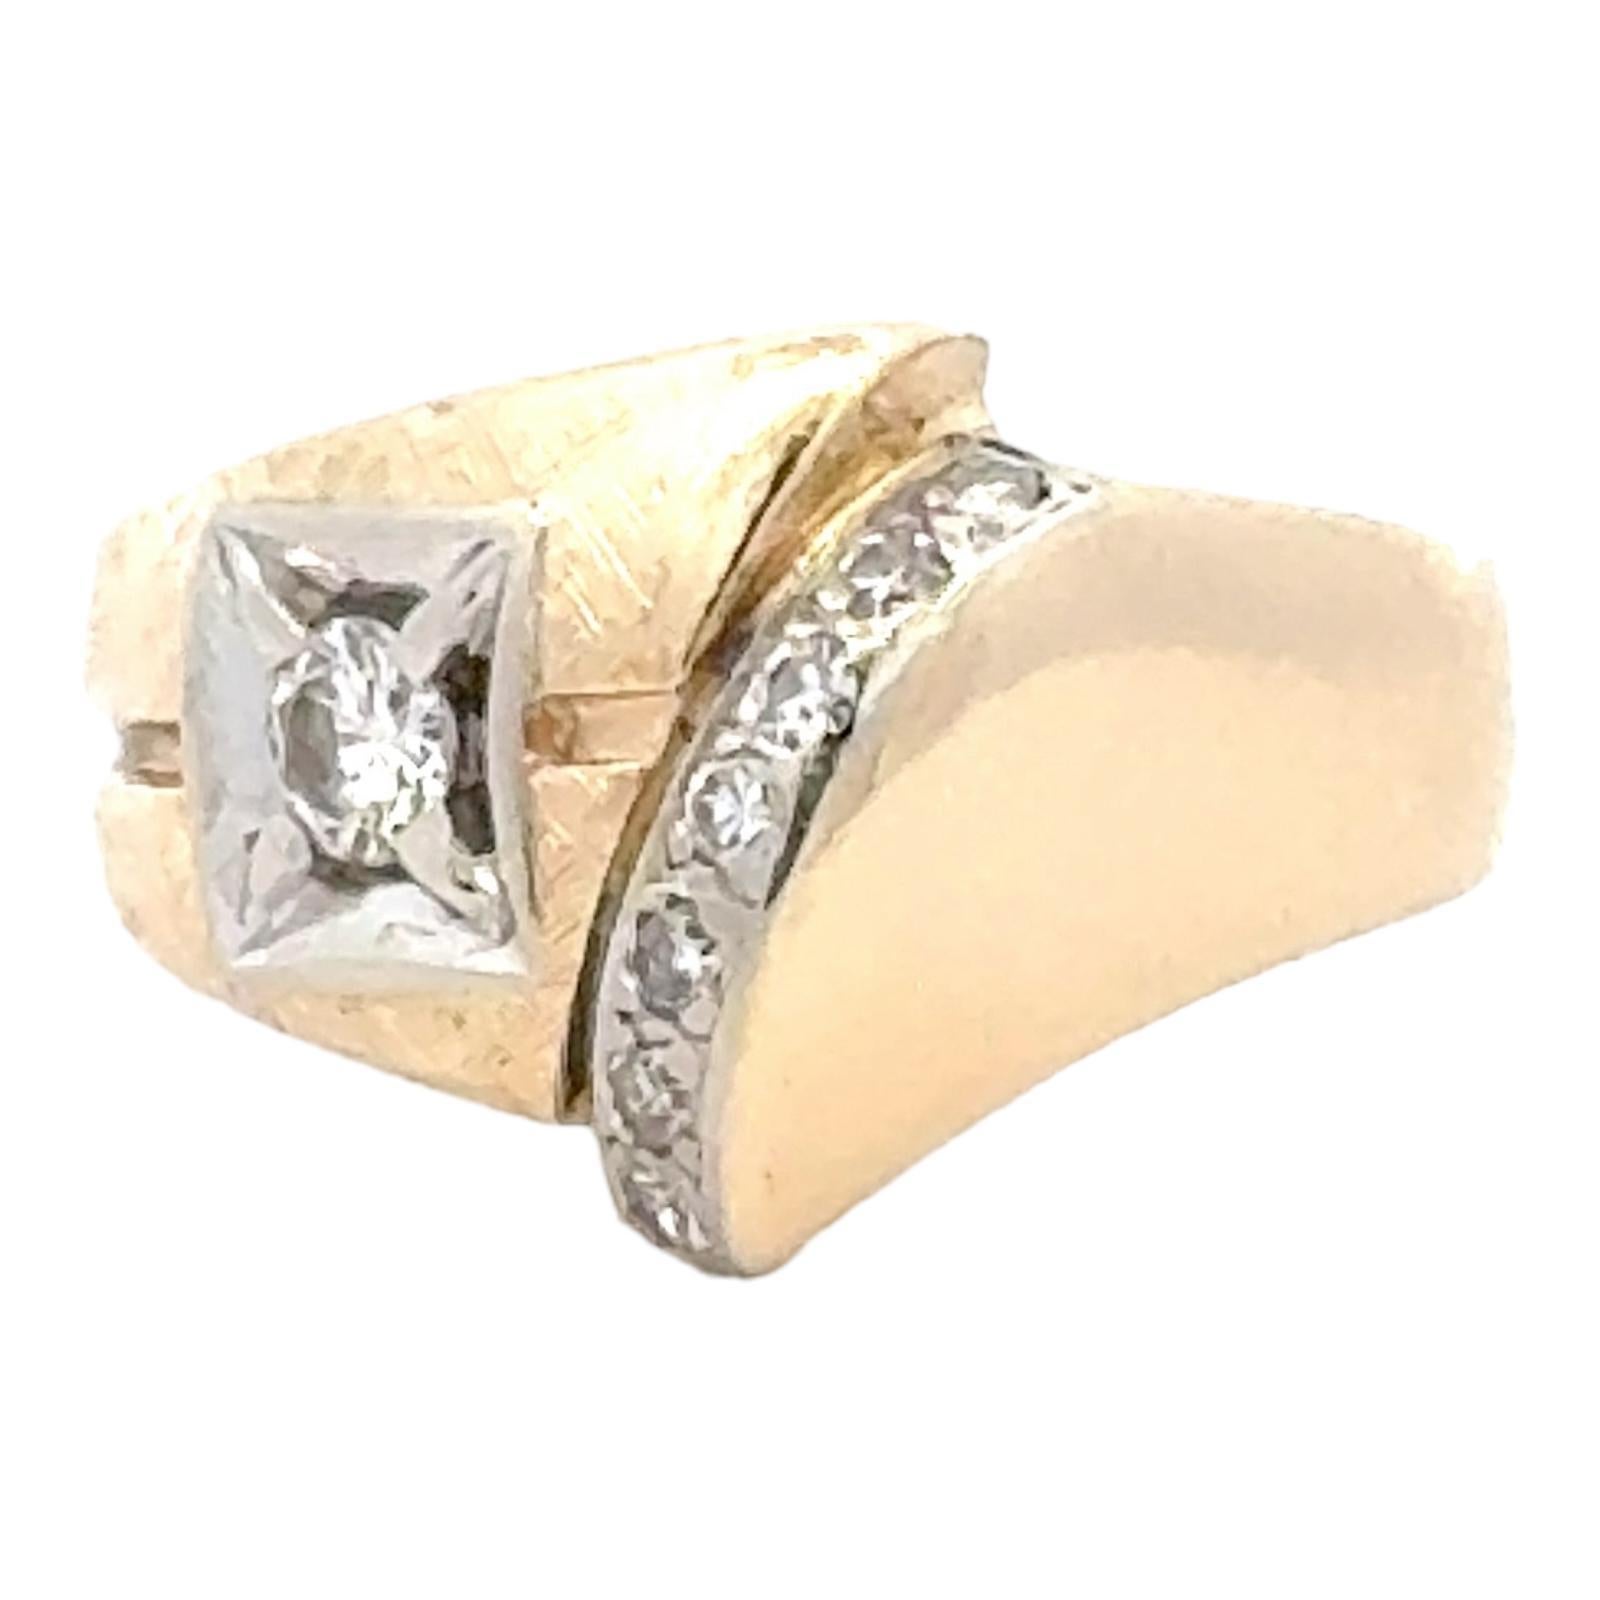 Zeitgenössischer Diamantring aus 14 Karat Gelbgold. Der Ring hat einen zentralen Diamanten von ca. 0,20 Karat und weitere seitliche Diamanten von 0,15CTW. Die Diamanten sind von der Farbe G-H und der Reinheit SI. Das Band hat eine Breite von 5-15 mm